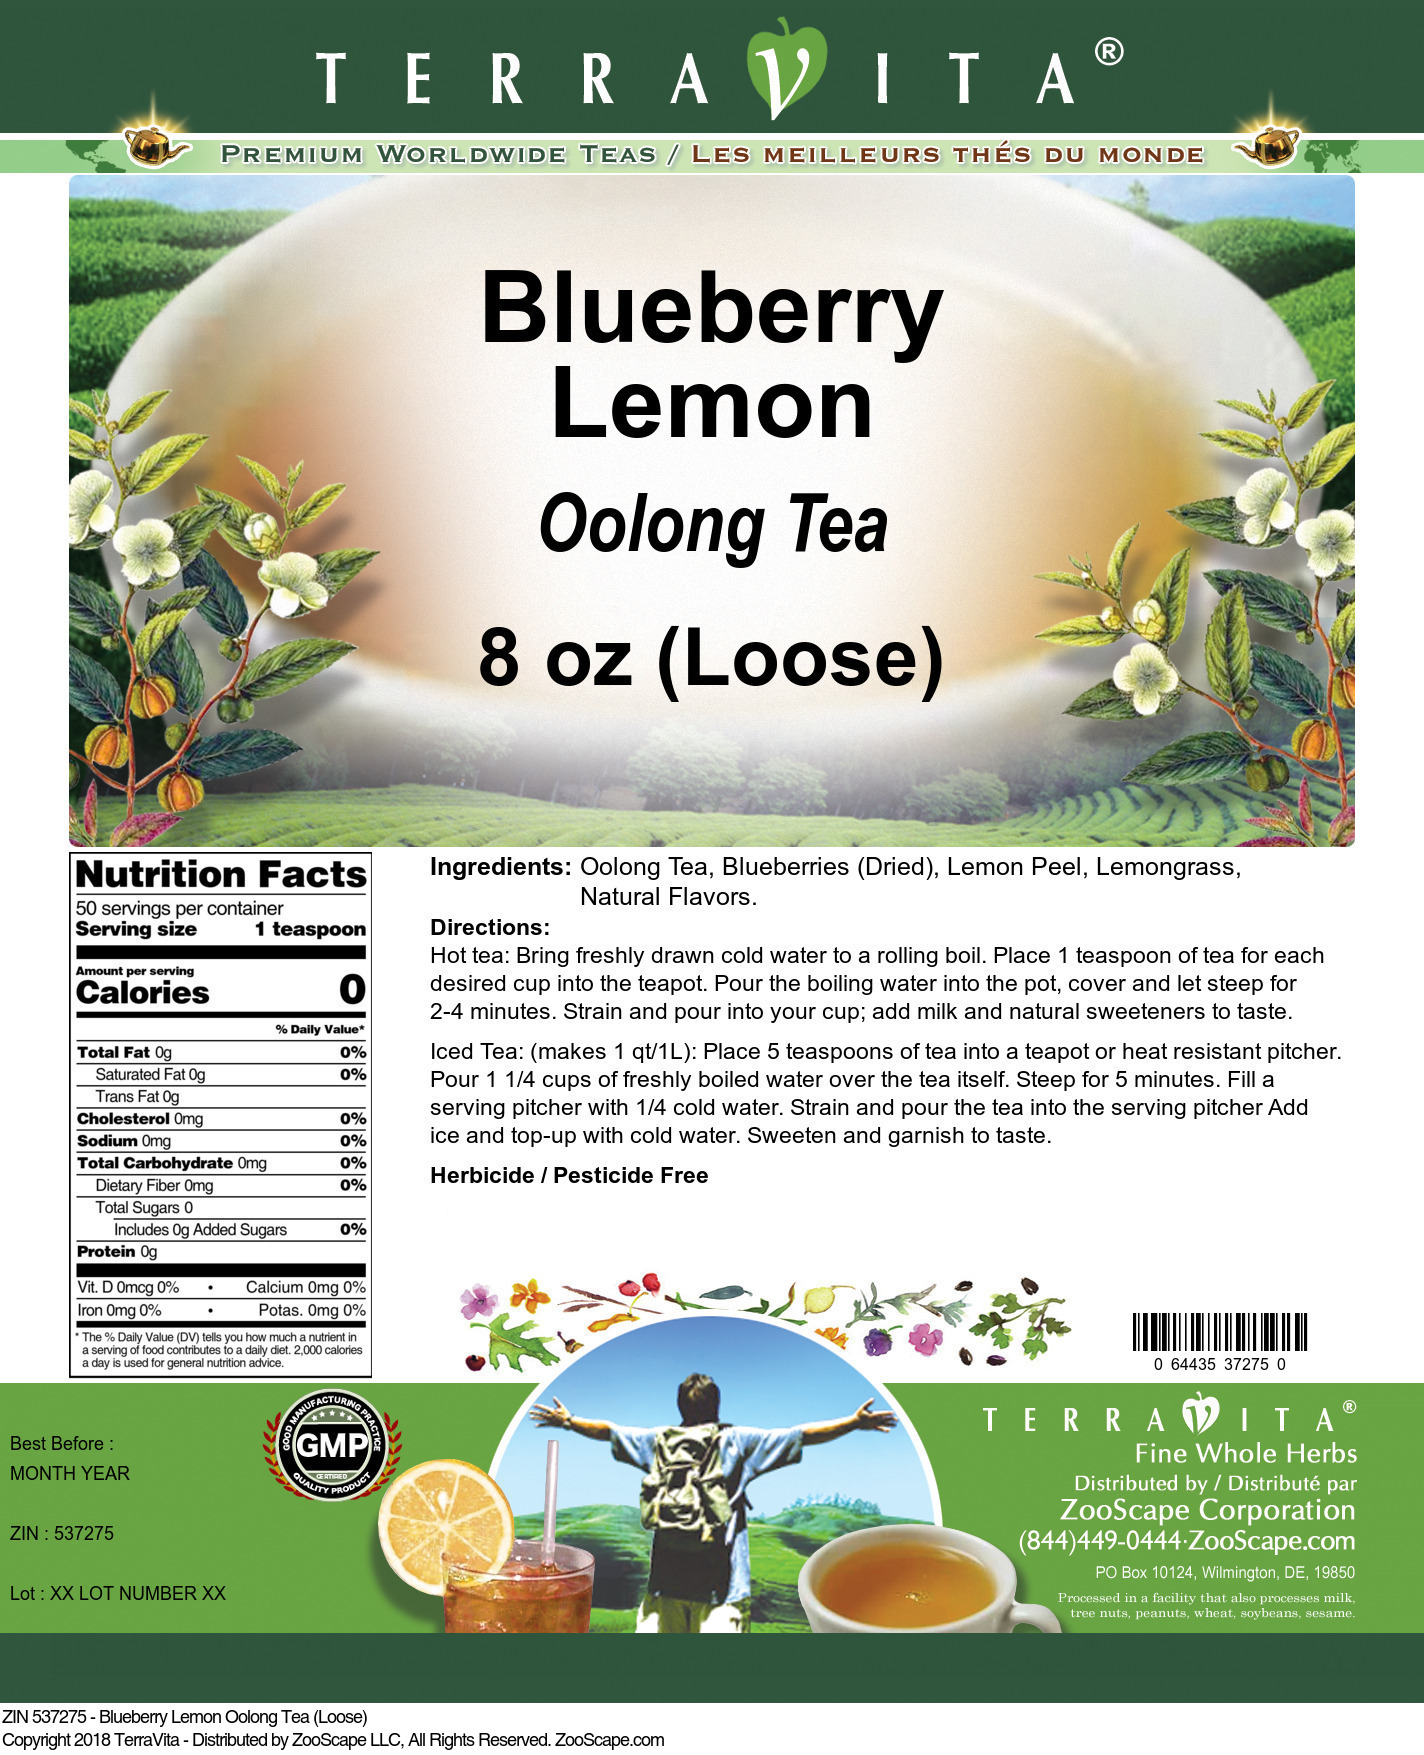 Blueberry Lemon Oolong Tea (Loose) - Label